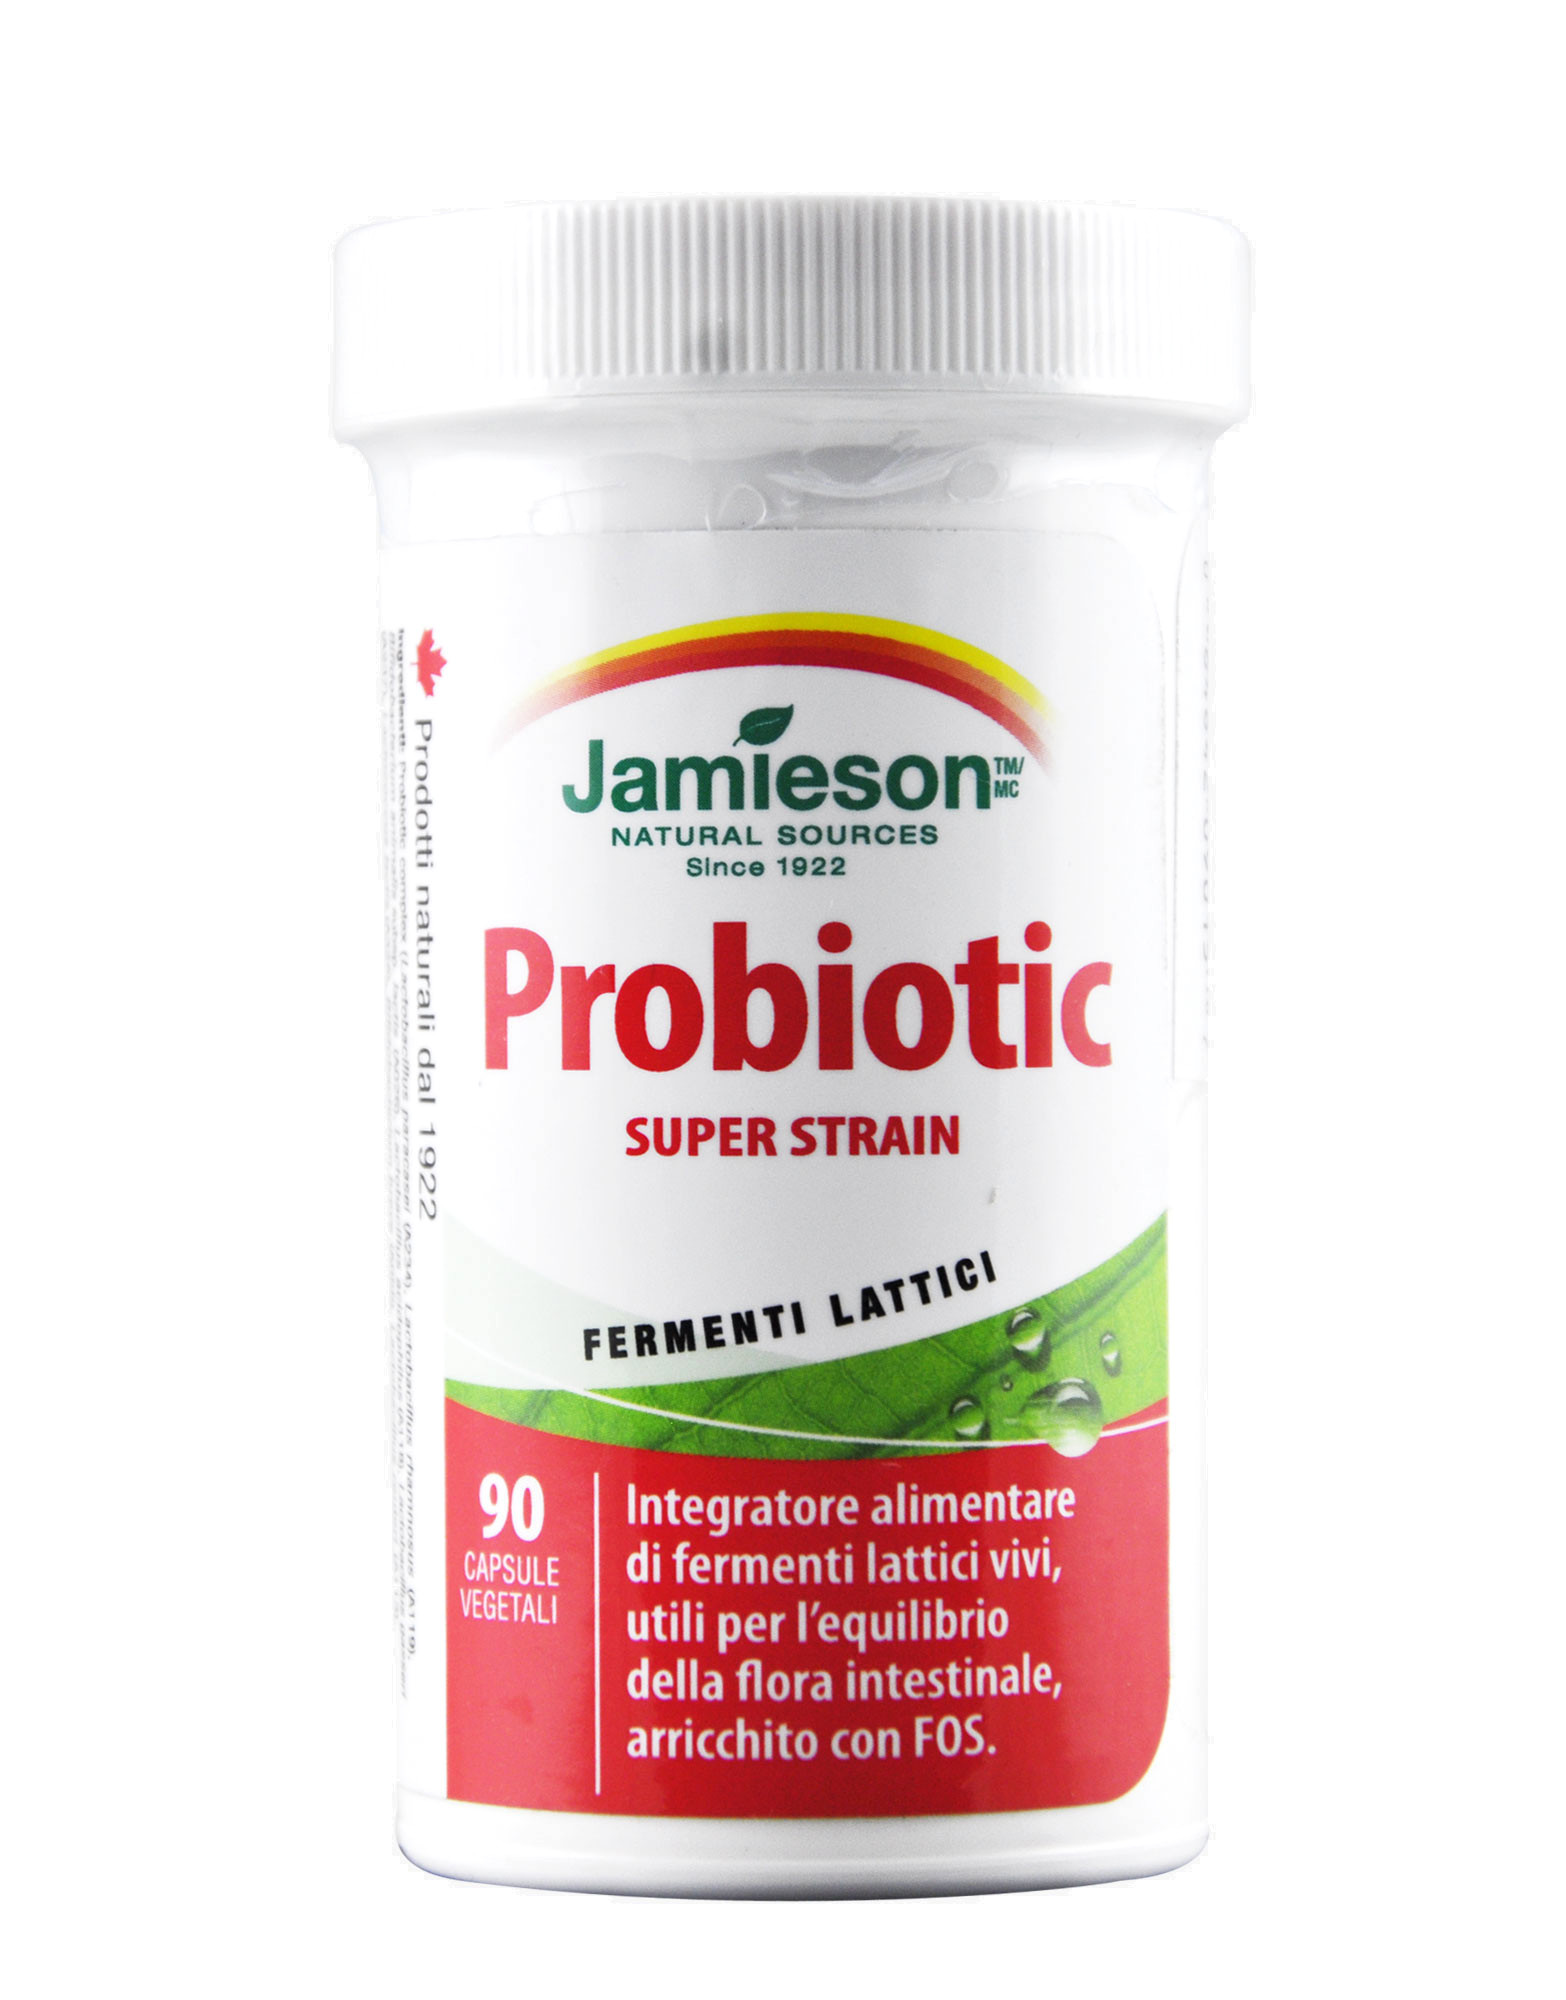 Probiotic Super Strain 90 capsule vegetali.